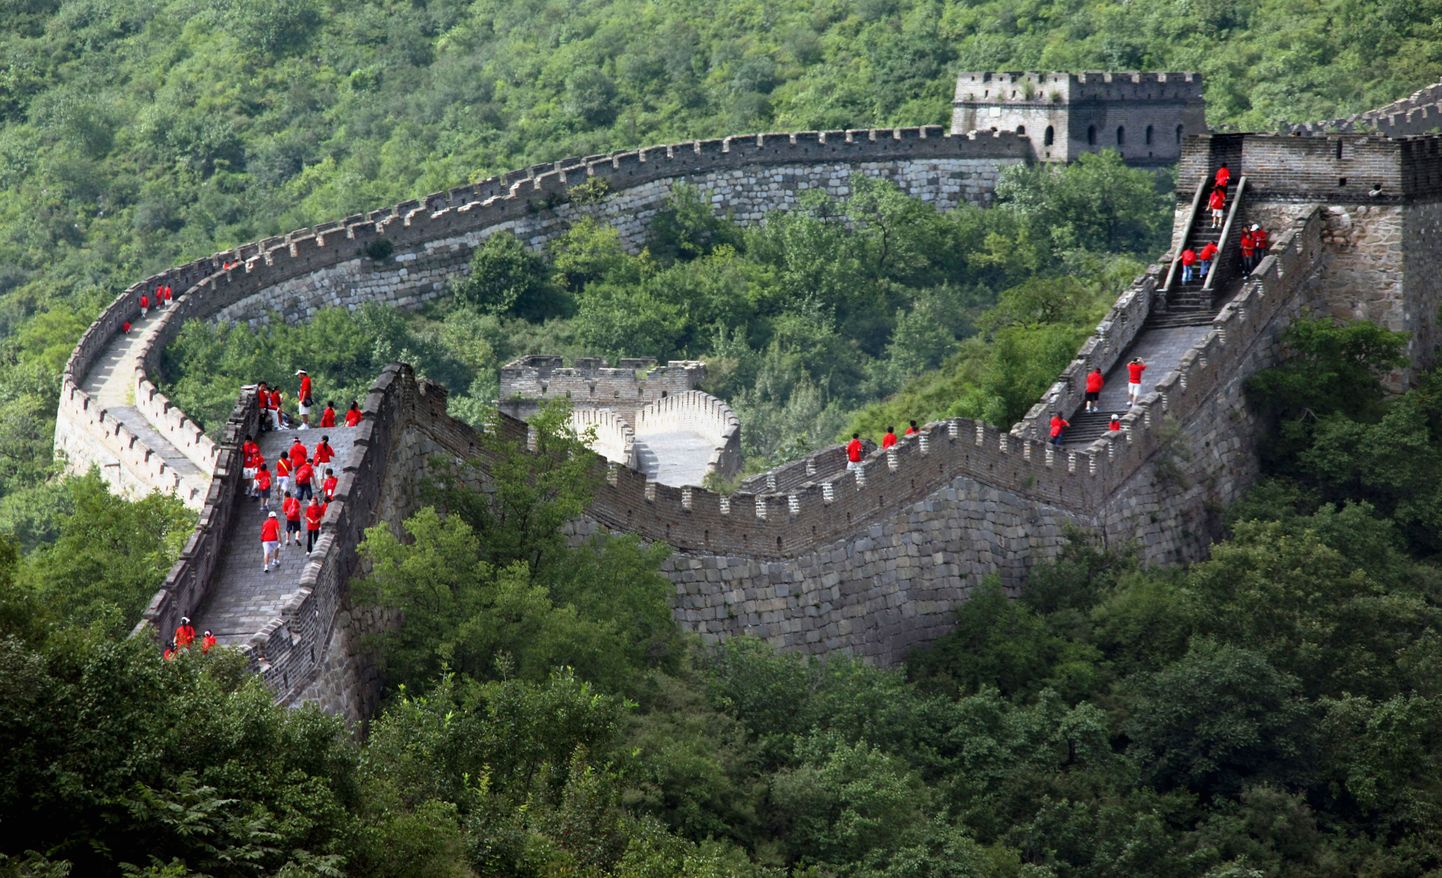 Hiina õpilased külastamas Suure Hiina müüri osa Pekingi läheduses.